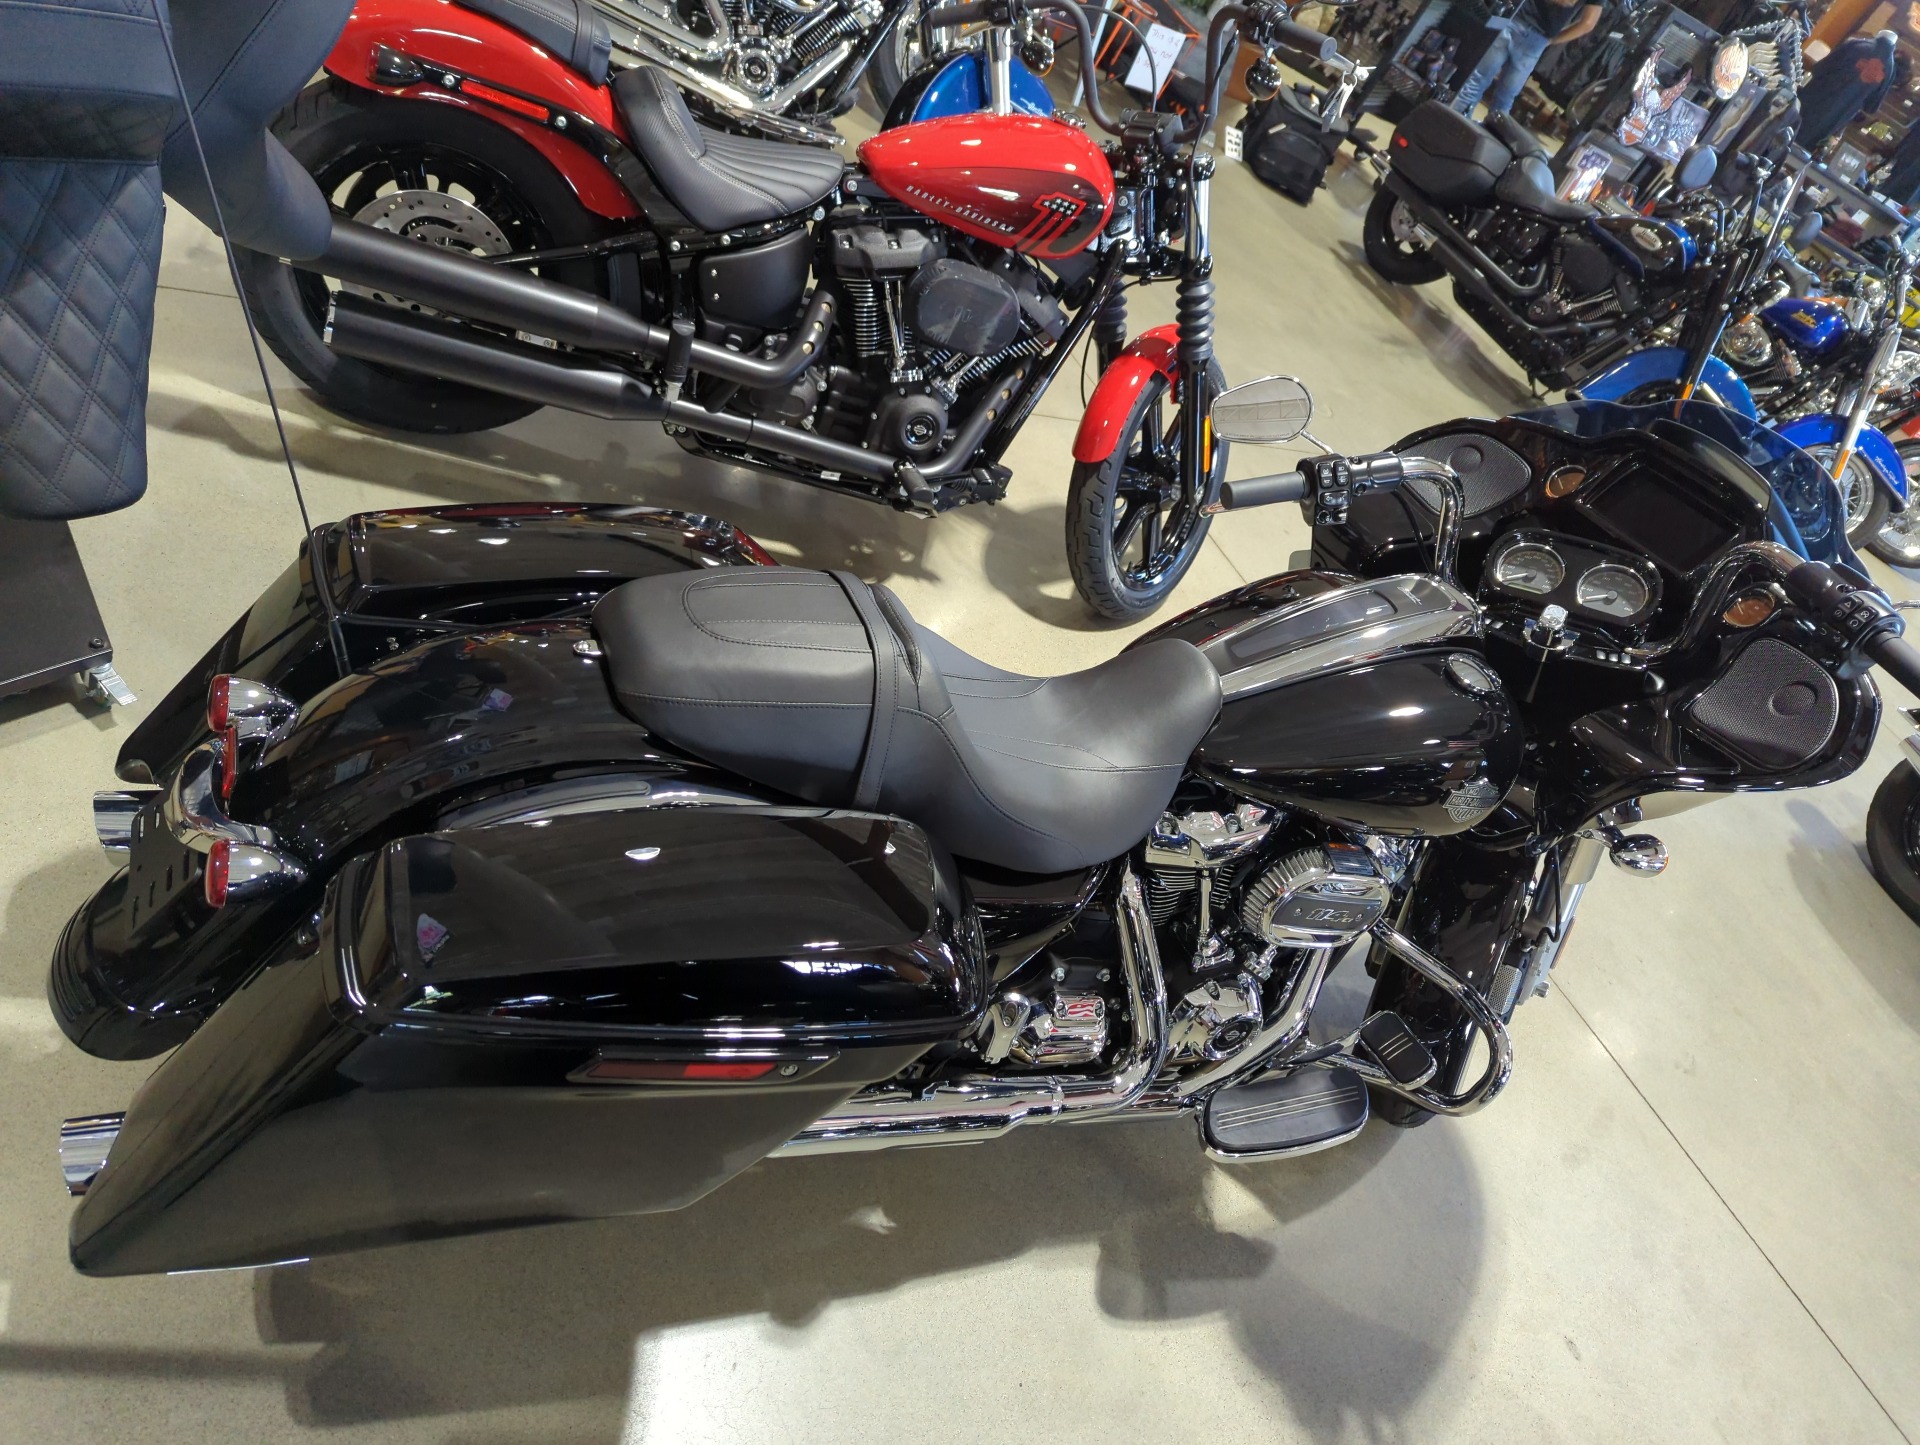 2022 Harley-Davidson Road Glide® Special in Broadalbin, New York - Photo 3